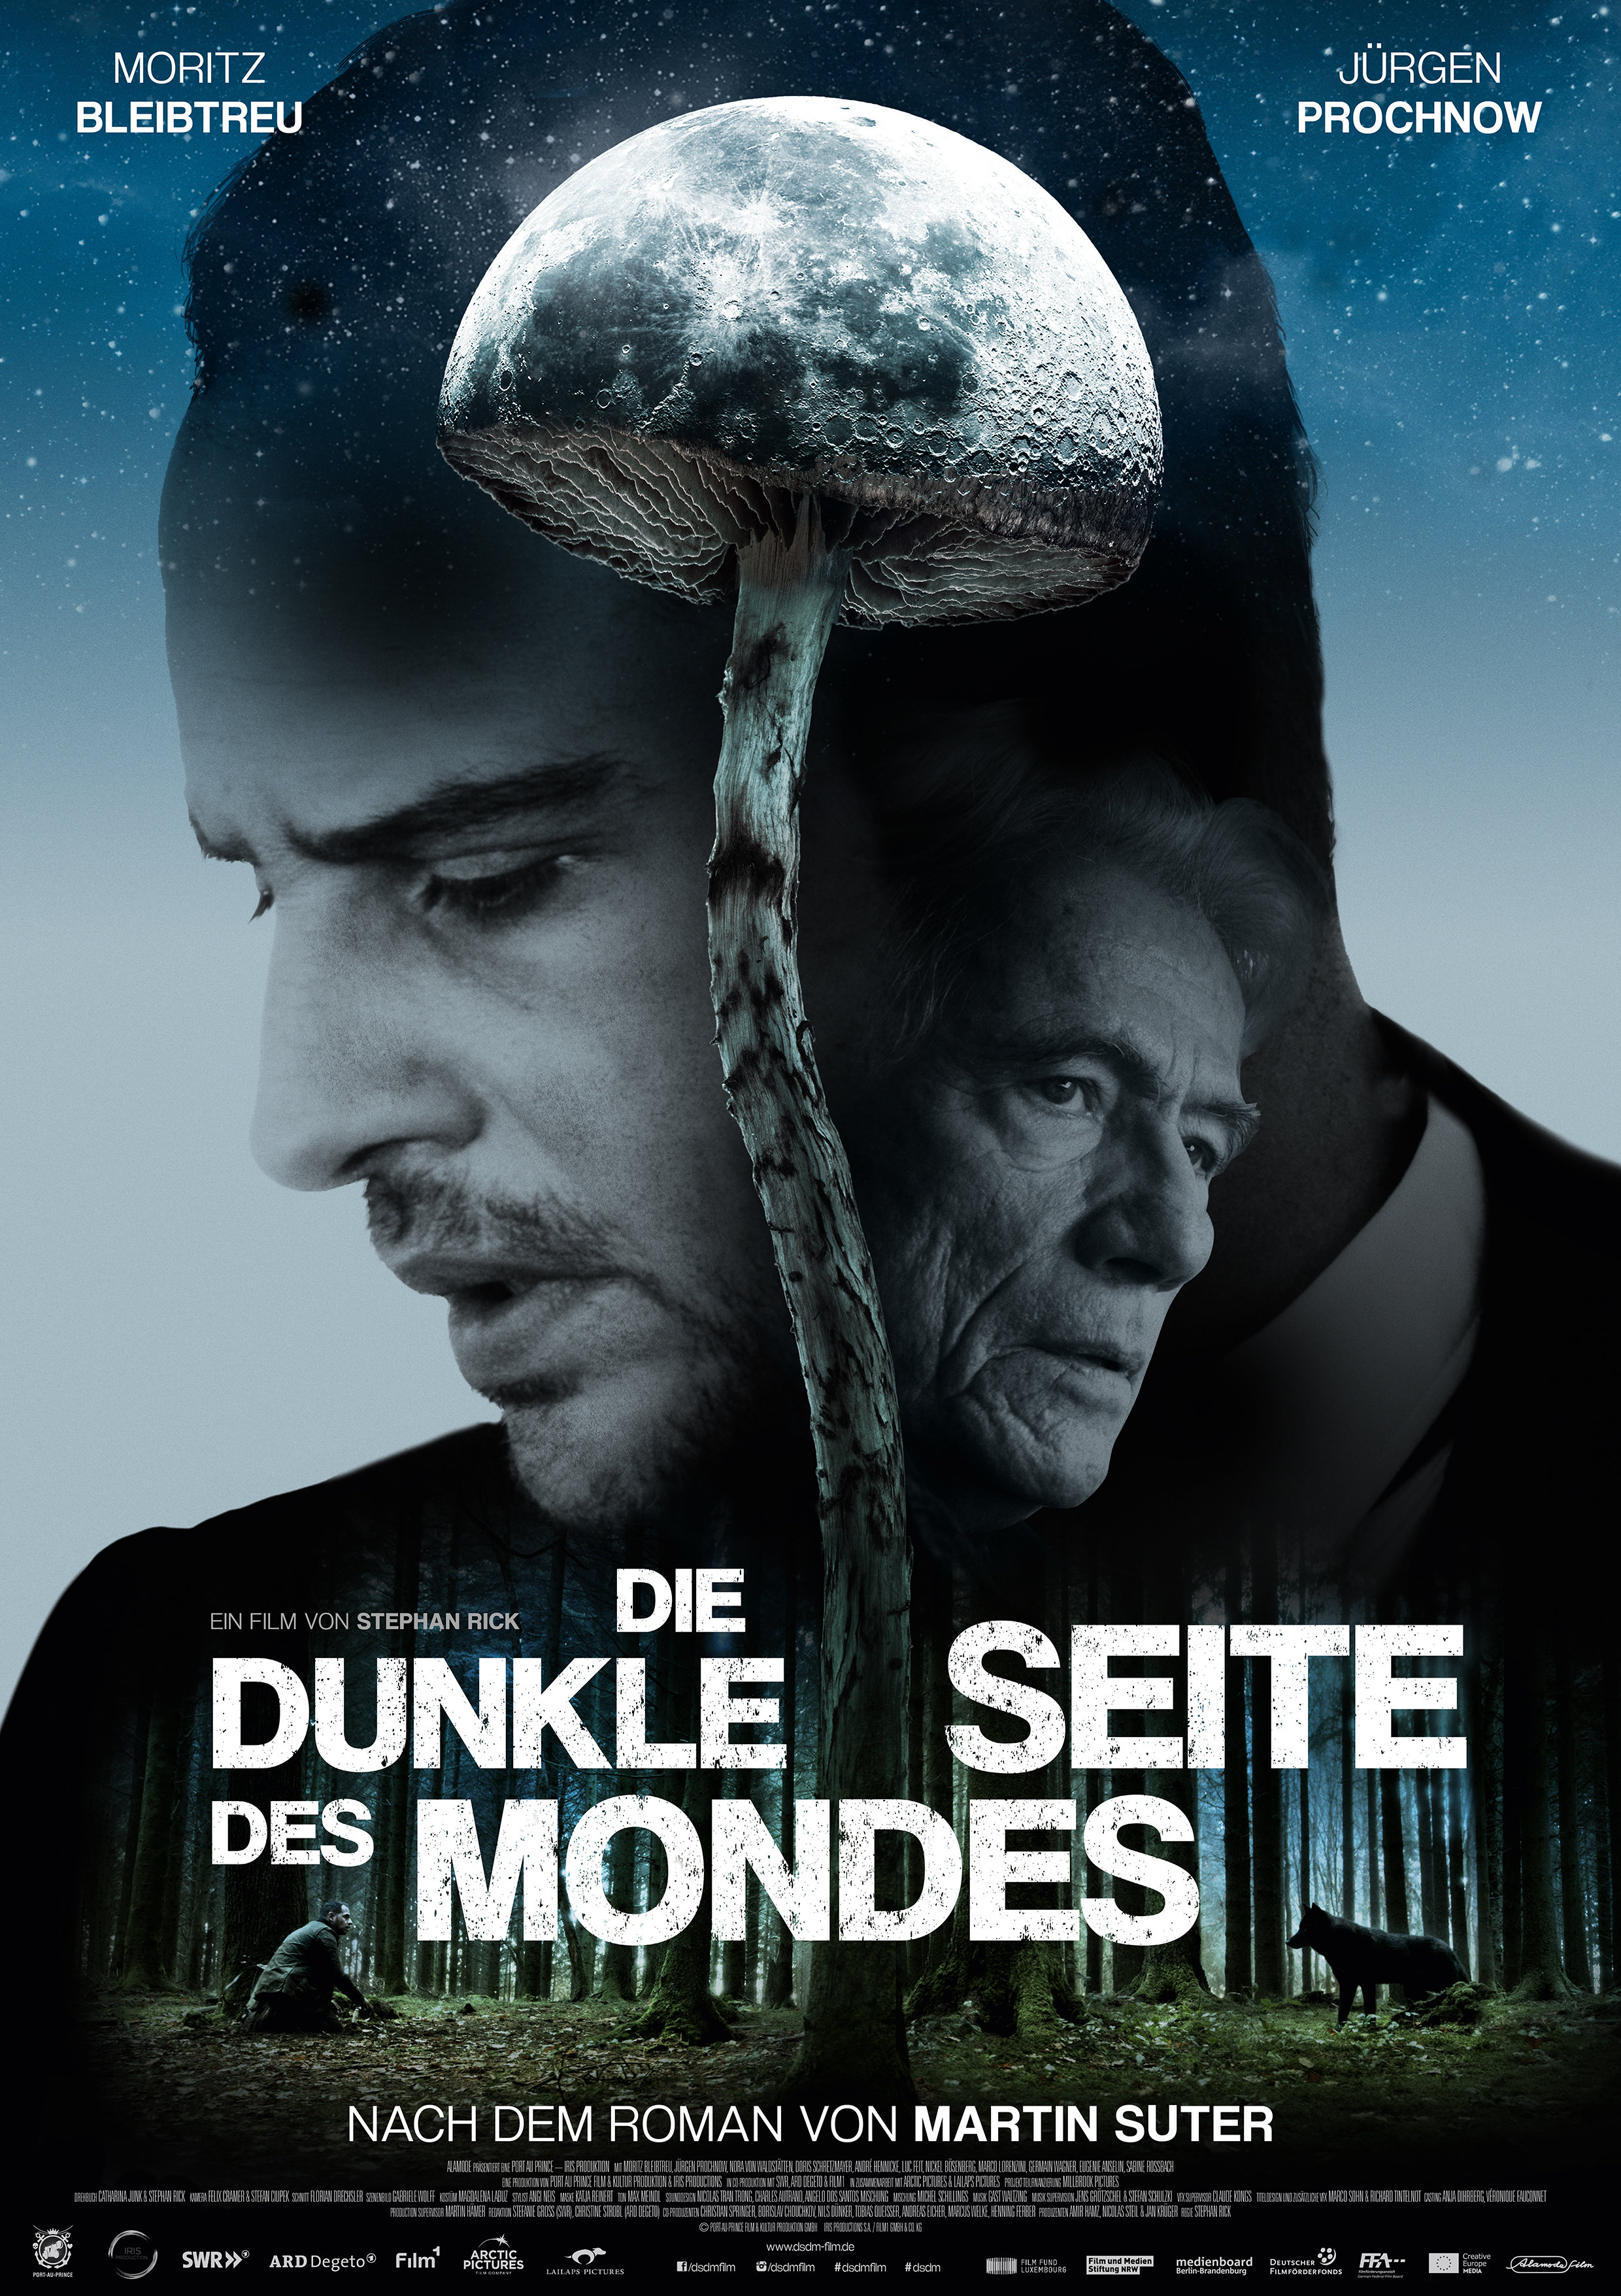 Jürgen Prochnow and Moritz Bleibtreu in Die dunkle Seite des Mondes (2015)